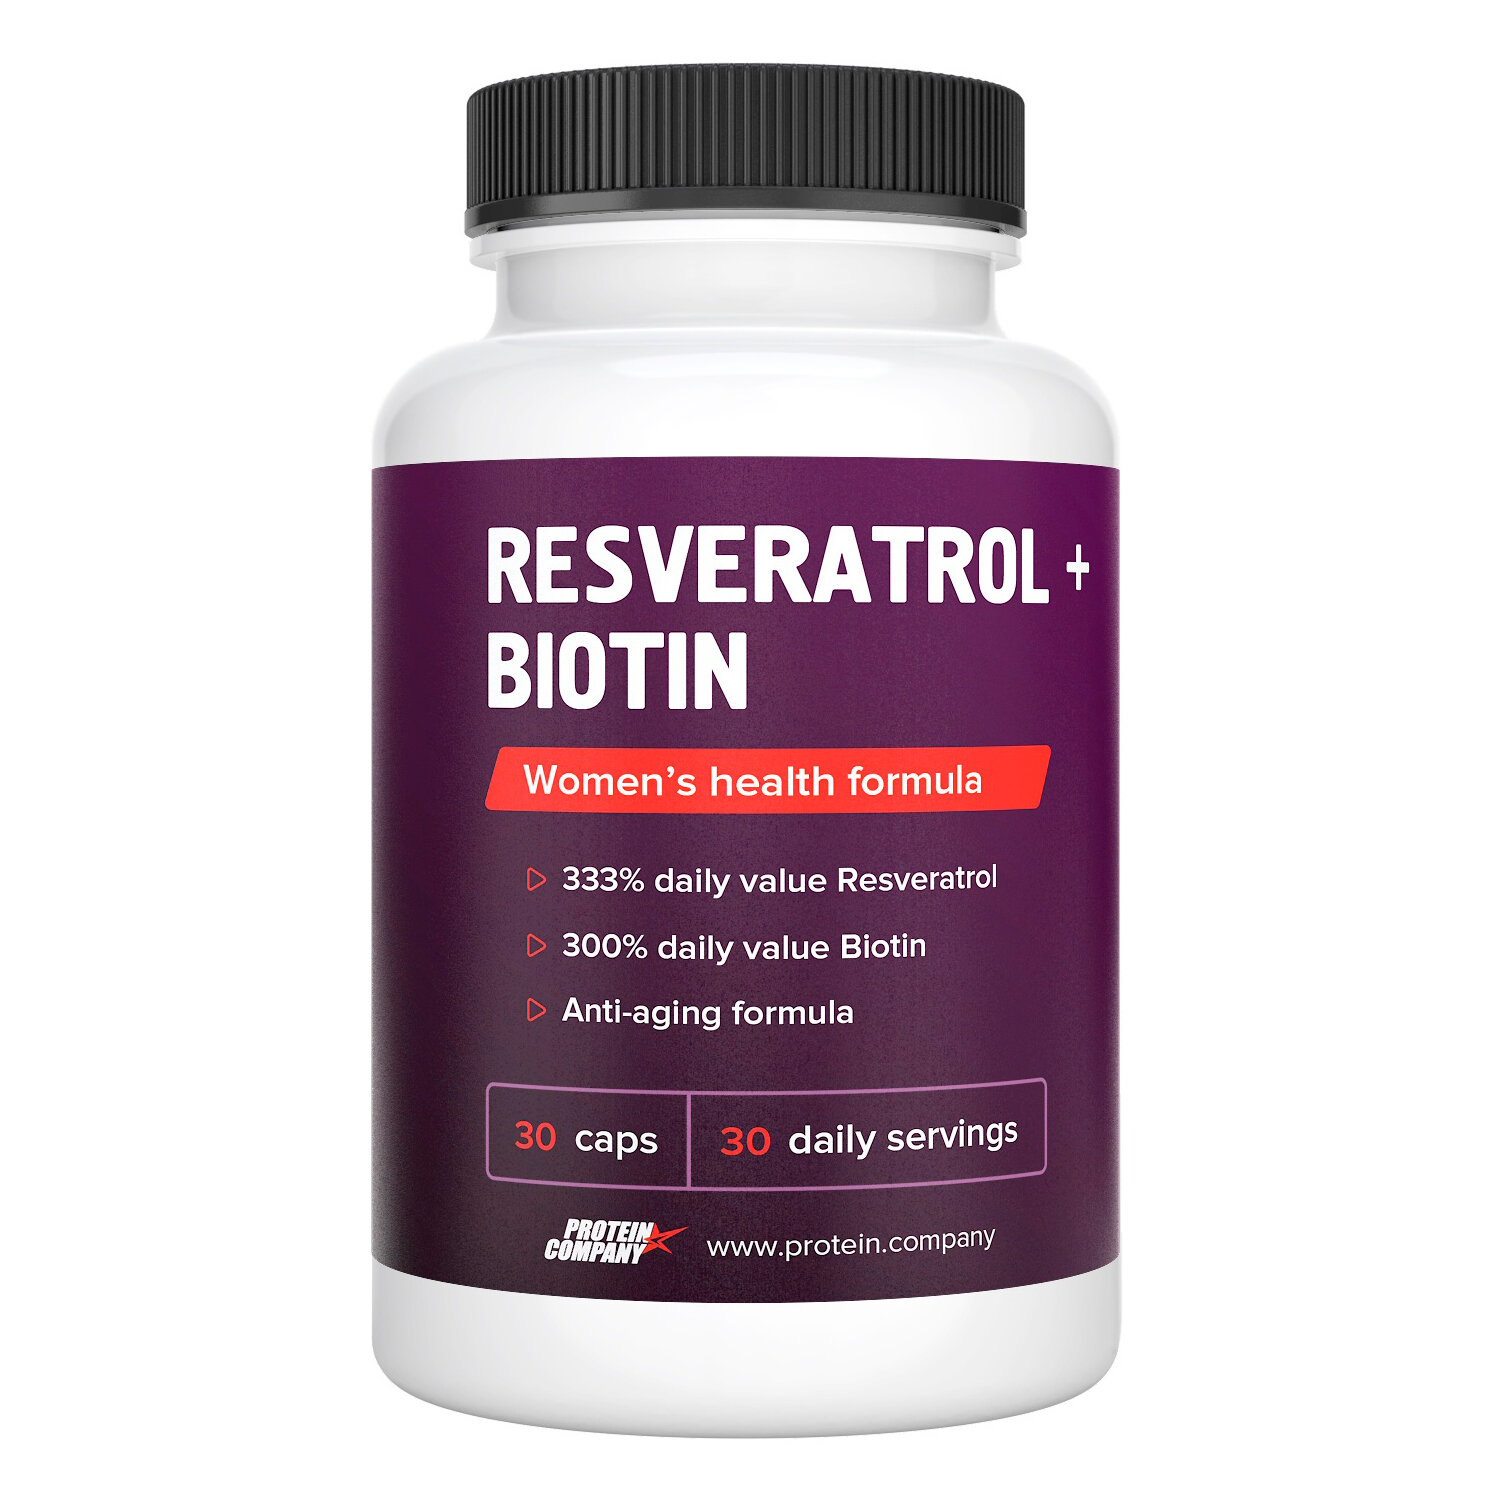 Ресвератрол + Биотин комплекс для женского здоровья 30 капсул. 100 мг Resveratrol + 150 мкг Biotin в одной капсуле.